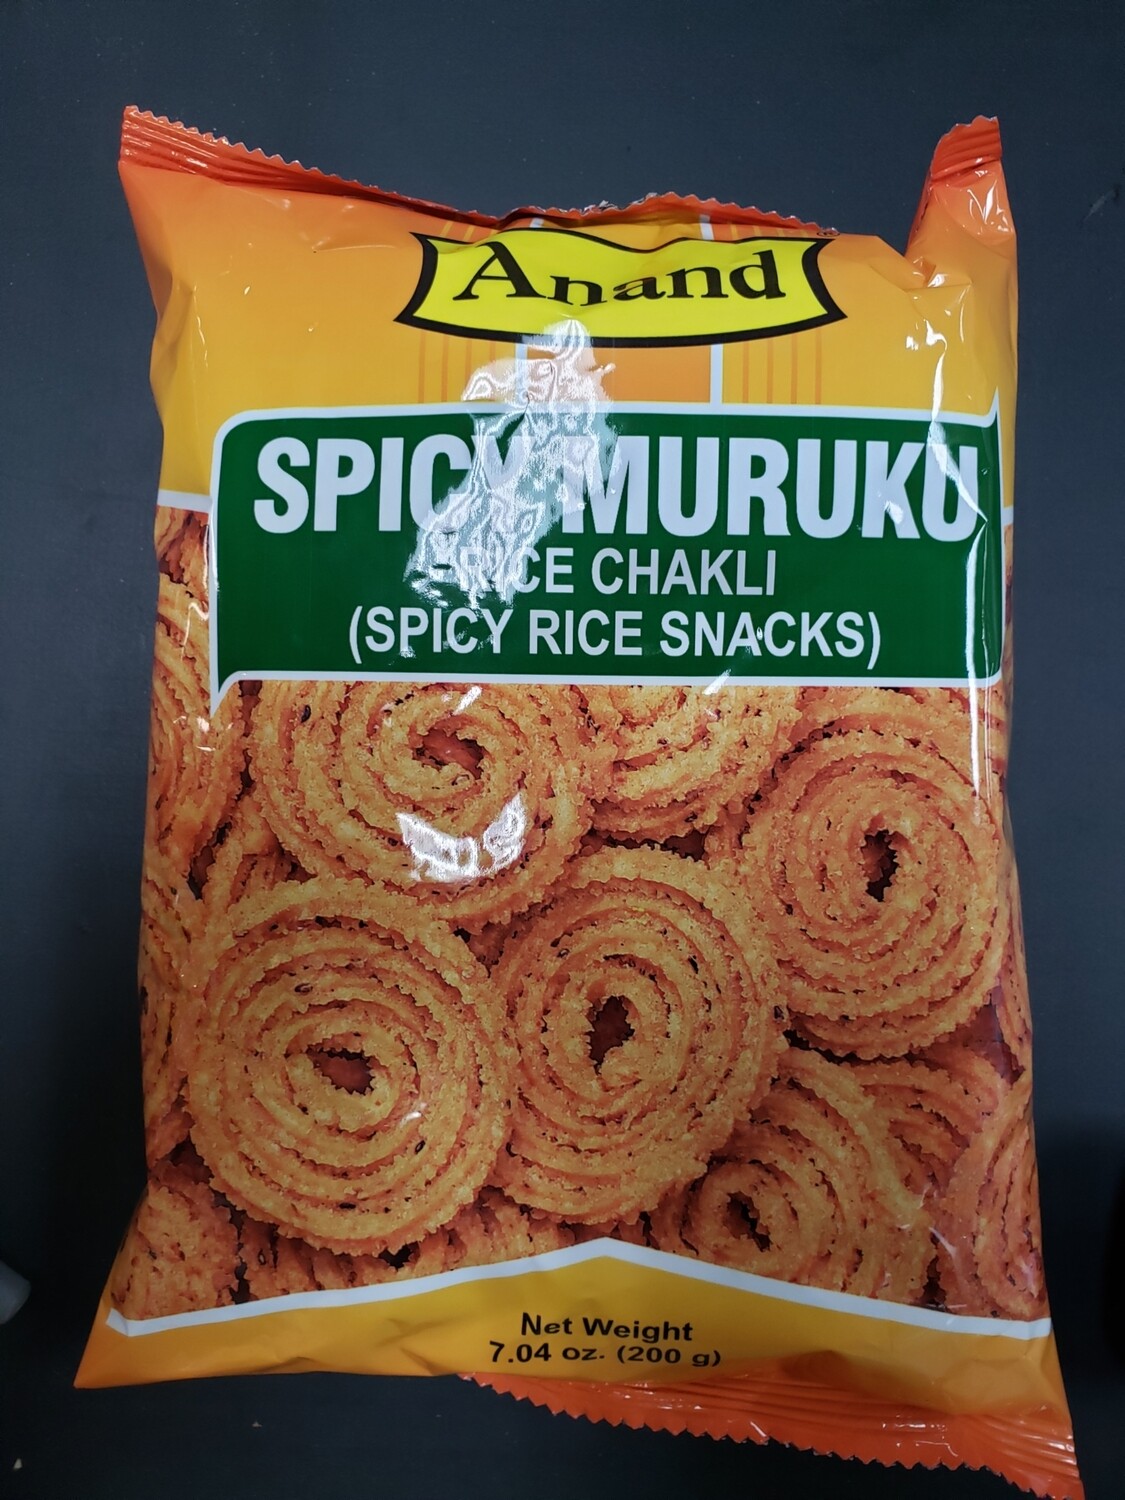 Anand Spicy Muruku 170g